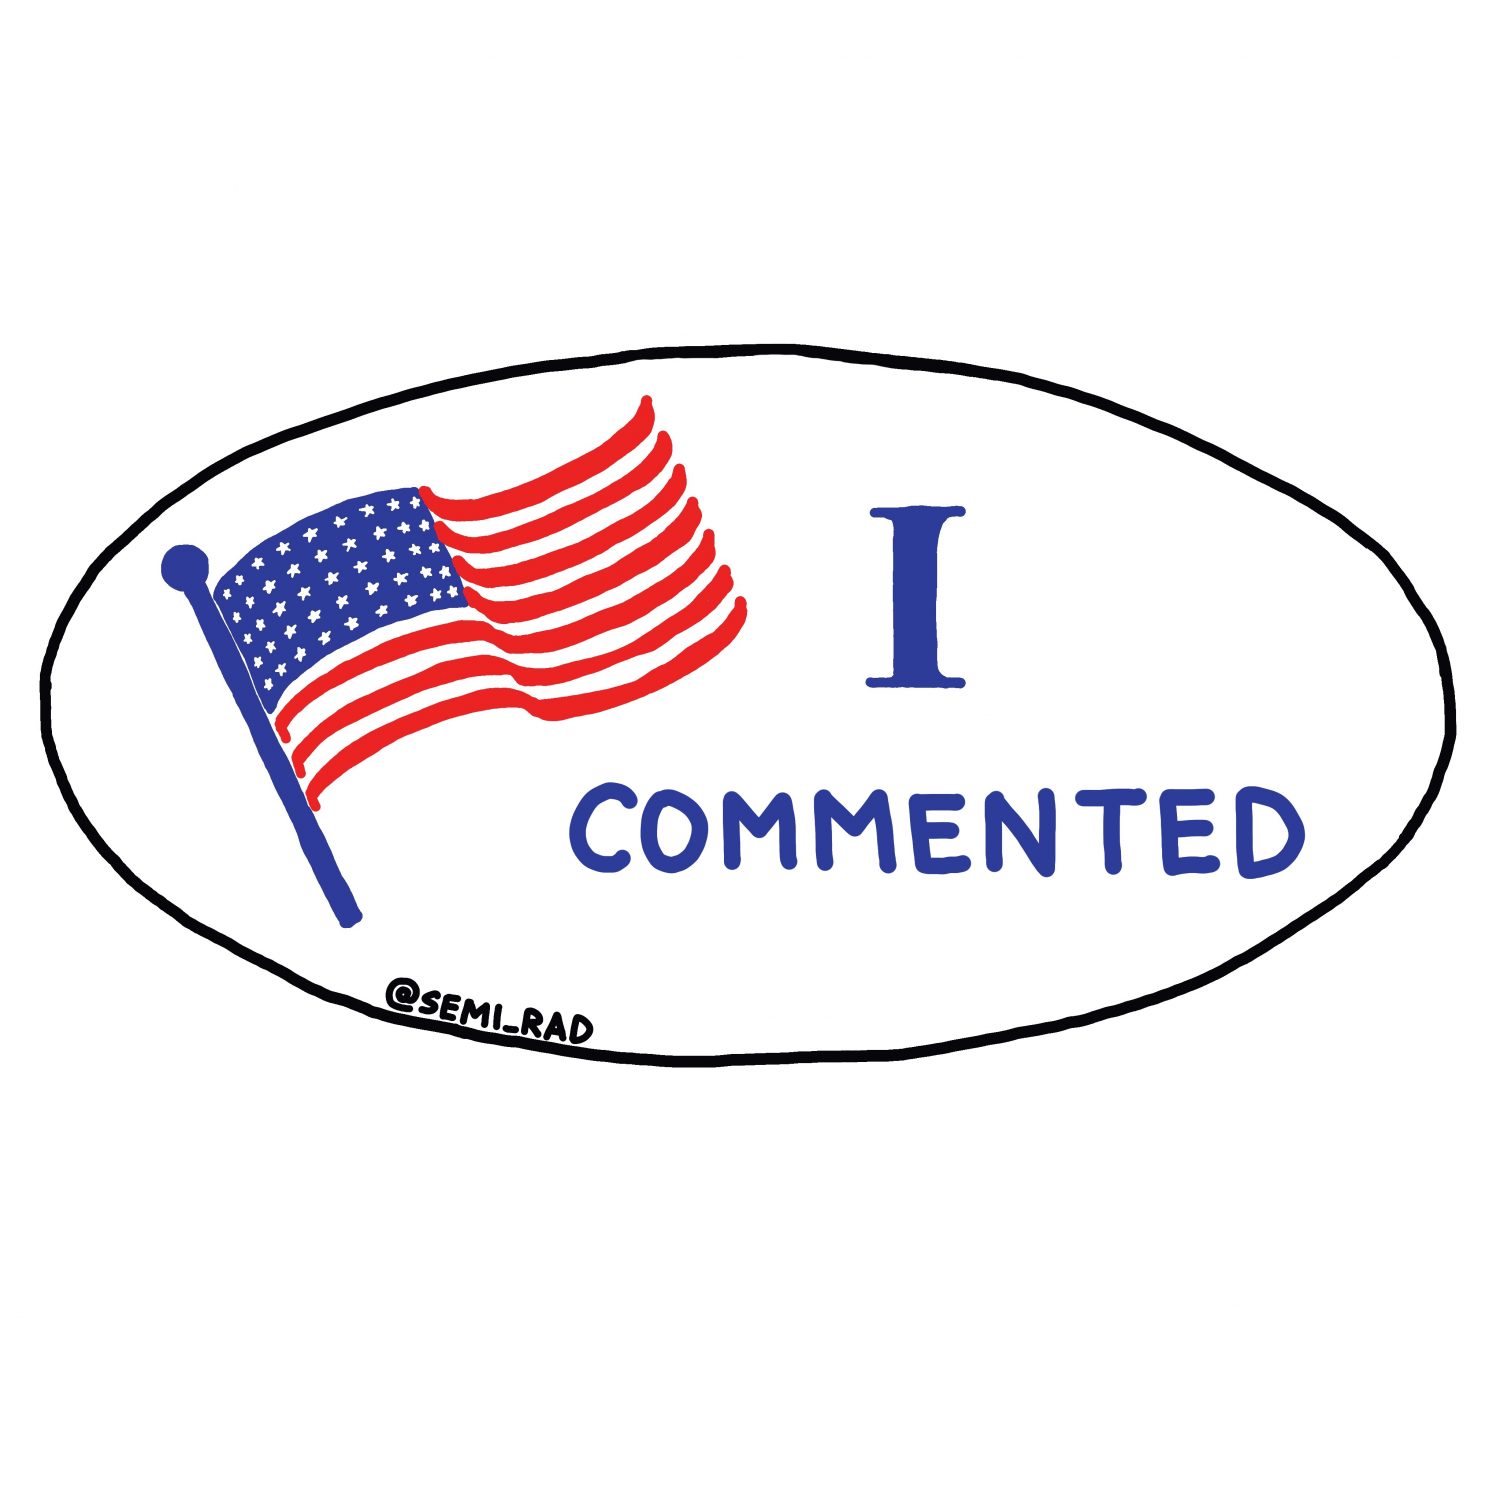 semi-rad 'I Commented" voting sticker